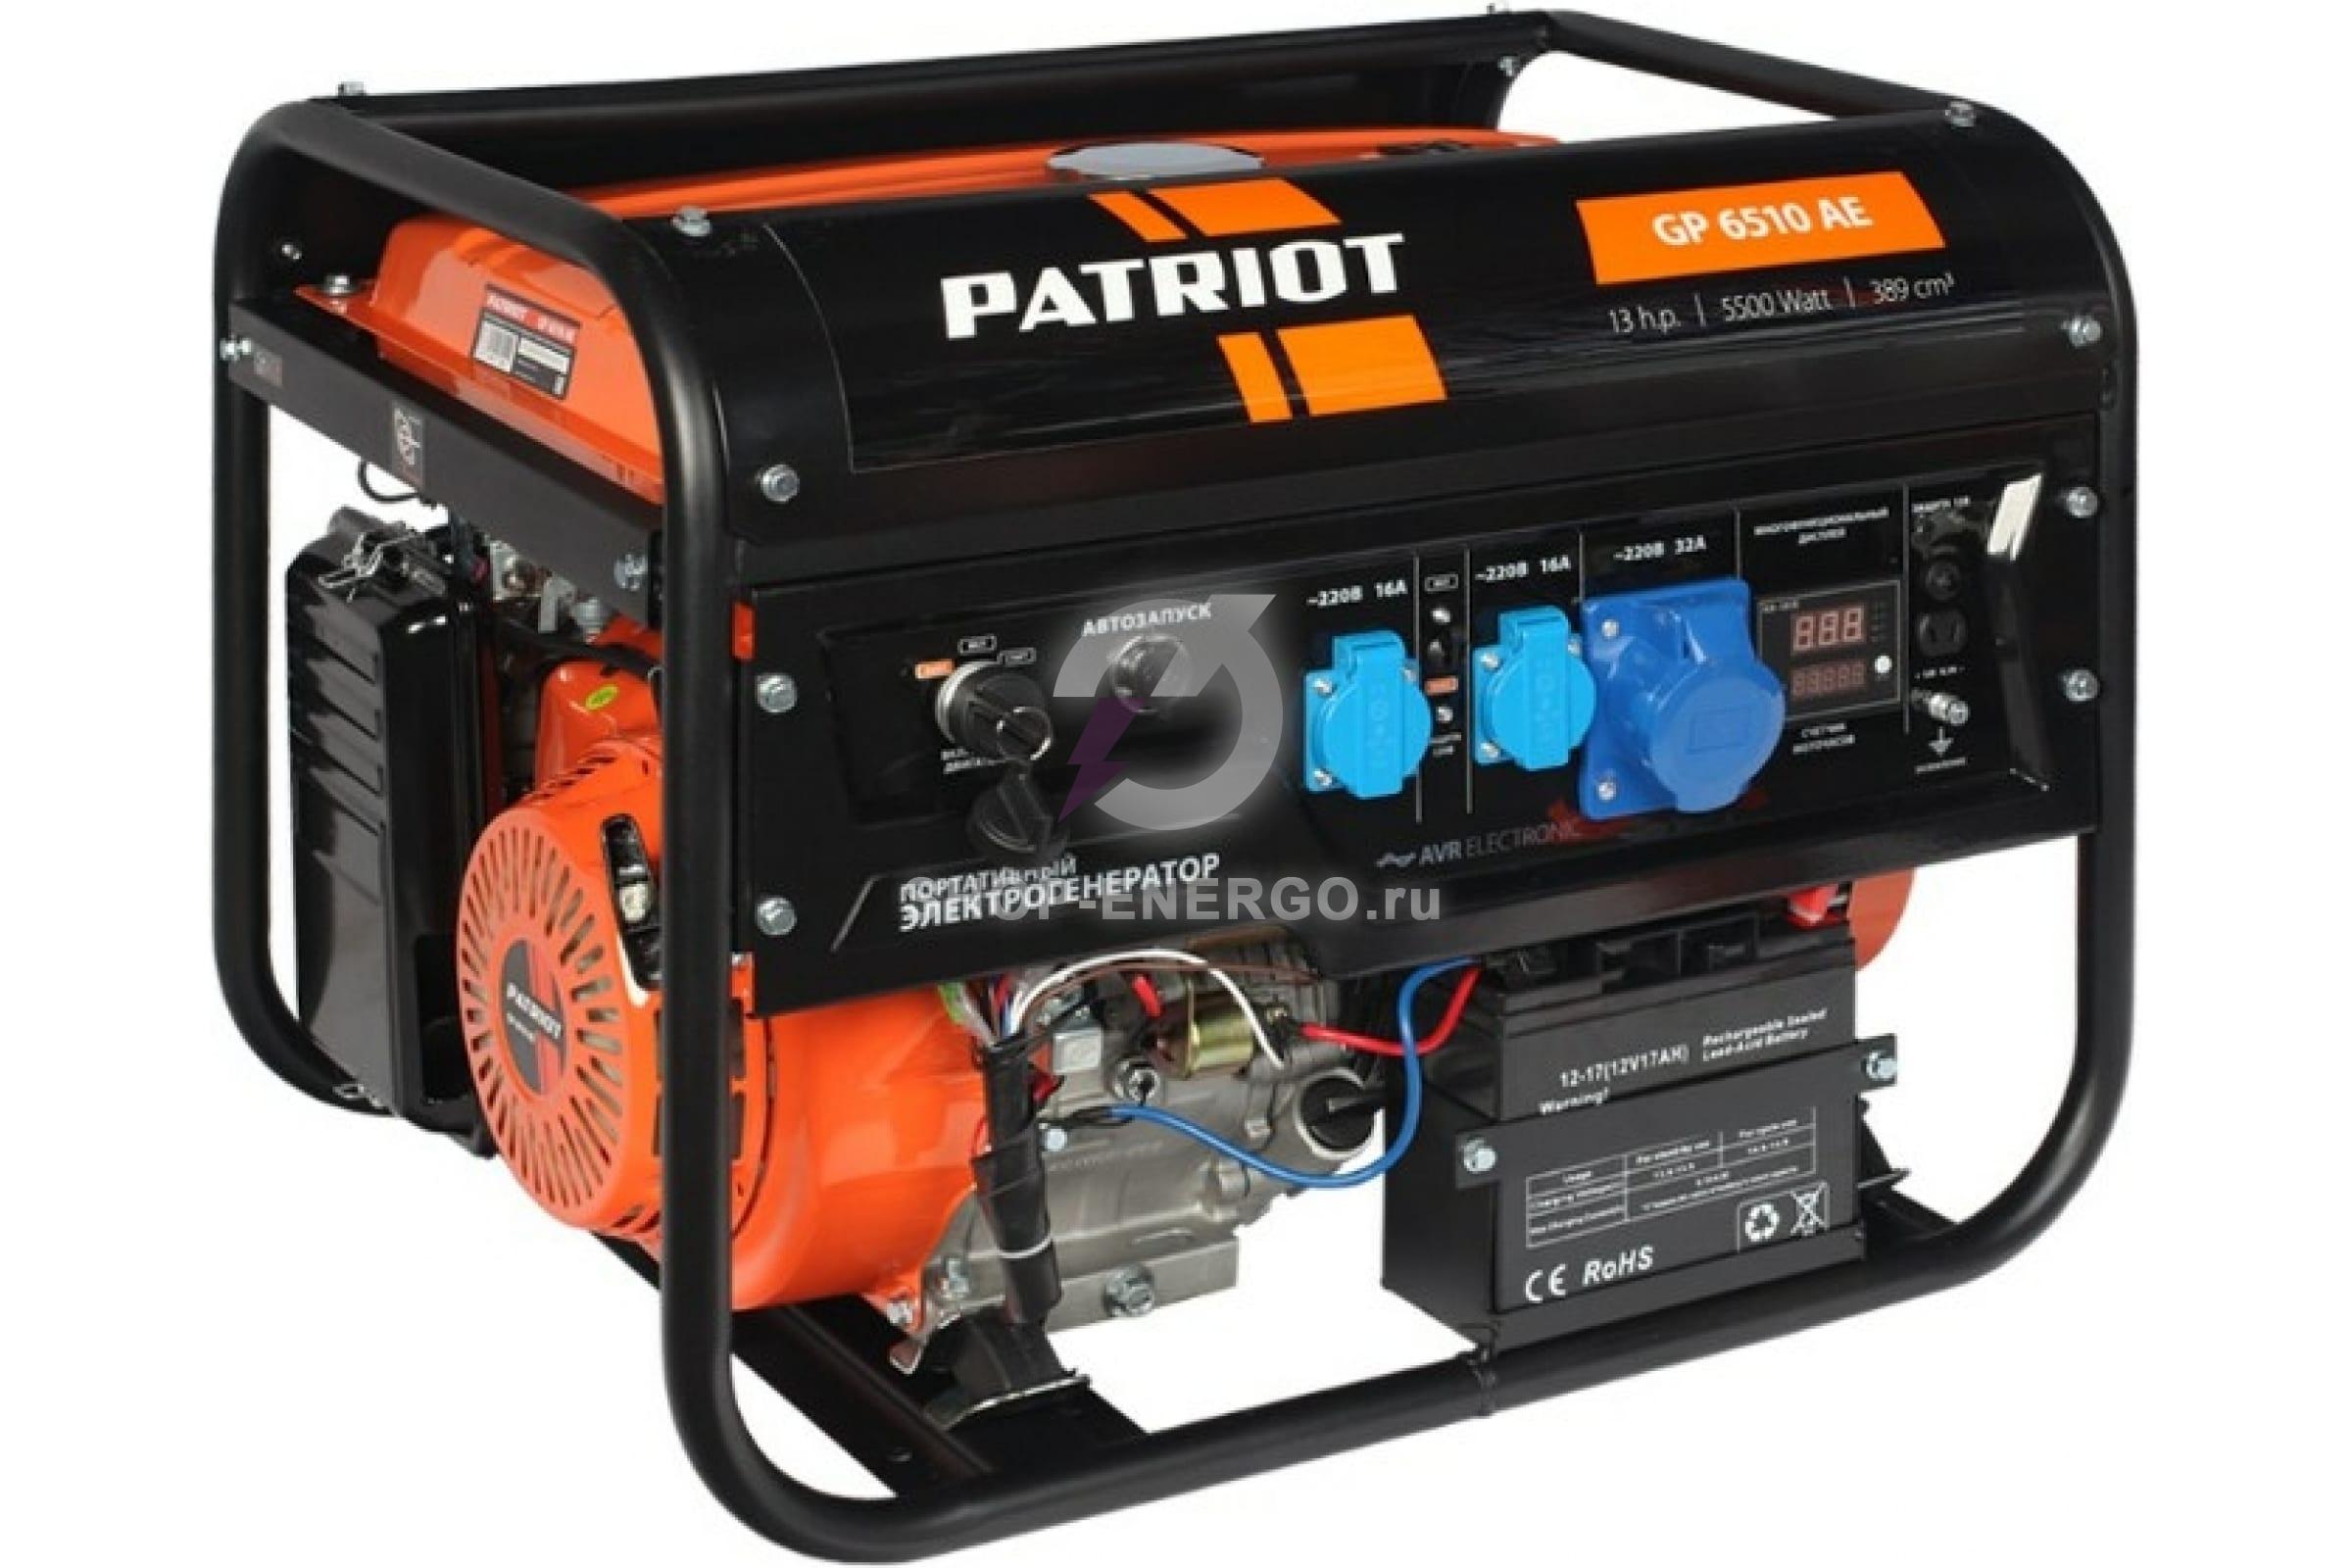 Бензиновый генератор PATRIOT GP 6510 AE